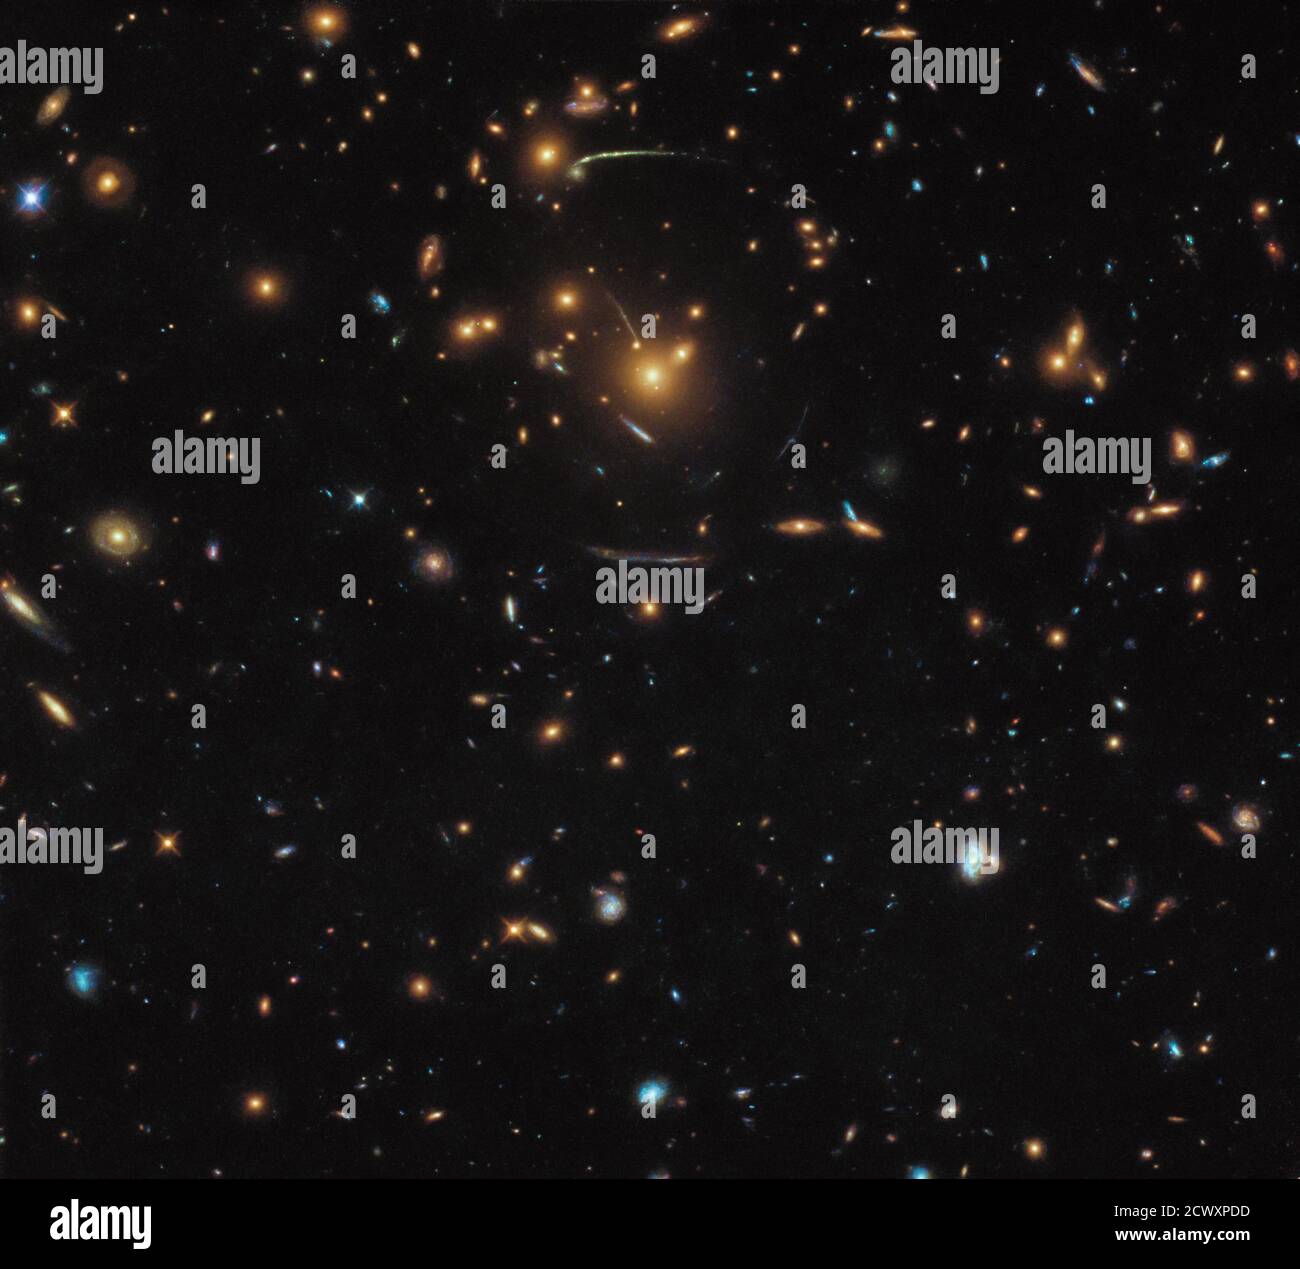 Vue déformée de l’Univers de Hubble cette image du télescope spatial Hubble NASA/ESA contient un véritable mélange de différentes galaxies, dont certaines appartiennent à la même structure plus grande : au milieu du cadre se trouve le groupe de galaxies SDSS J1050+0017. La masse gigantesque de cette grappe crée le phénomène fascinant de la forte attraction gravitationnelle. La gravité de l'amas fait plier la lumière venant de l'arrière de la machine de la même manière que la base d'un verre à vin plie la lumière. Les effets de ce lensing peuvent être clairement vus comme des stries courbes formant une forme circulaire autour du centre du cadre. Astr Banque D'Images